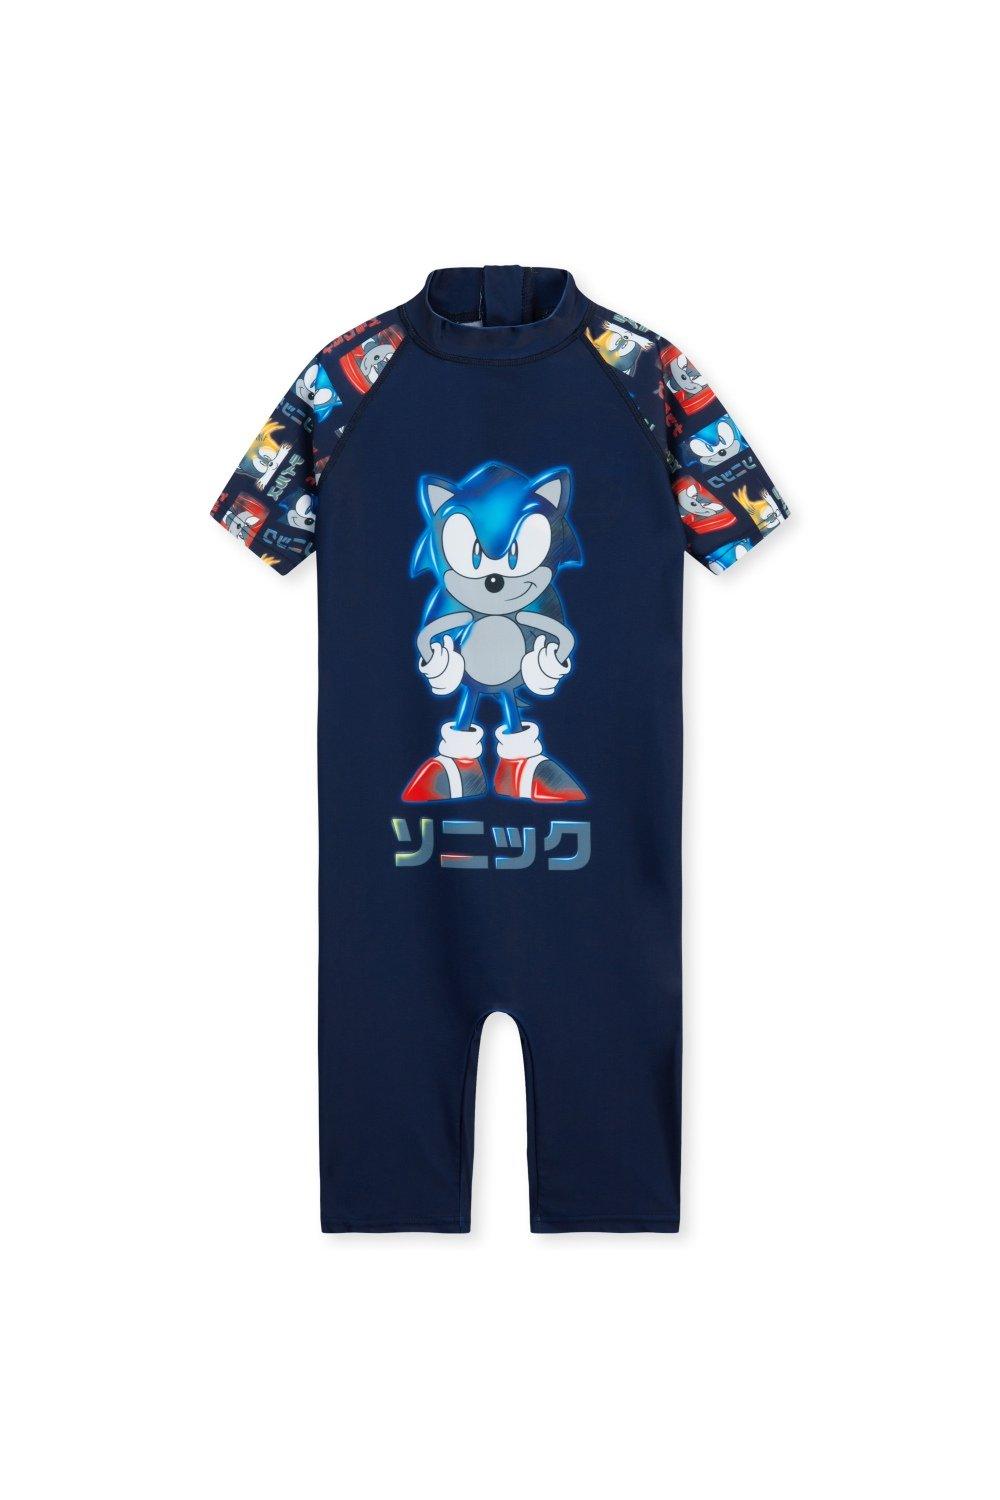 Цельный купальный костюм Купальник Sonic the Hedgehog, мультиколор купальник для мальчиков julysand высококачественный купальник из двух предметов детский купальный костюм с волнистым принтом для ухода за ко